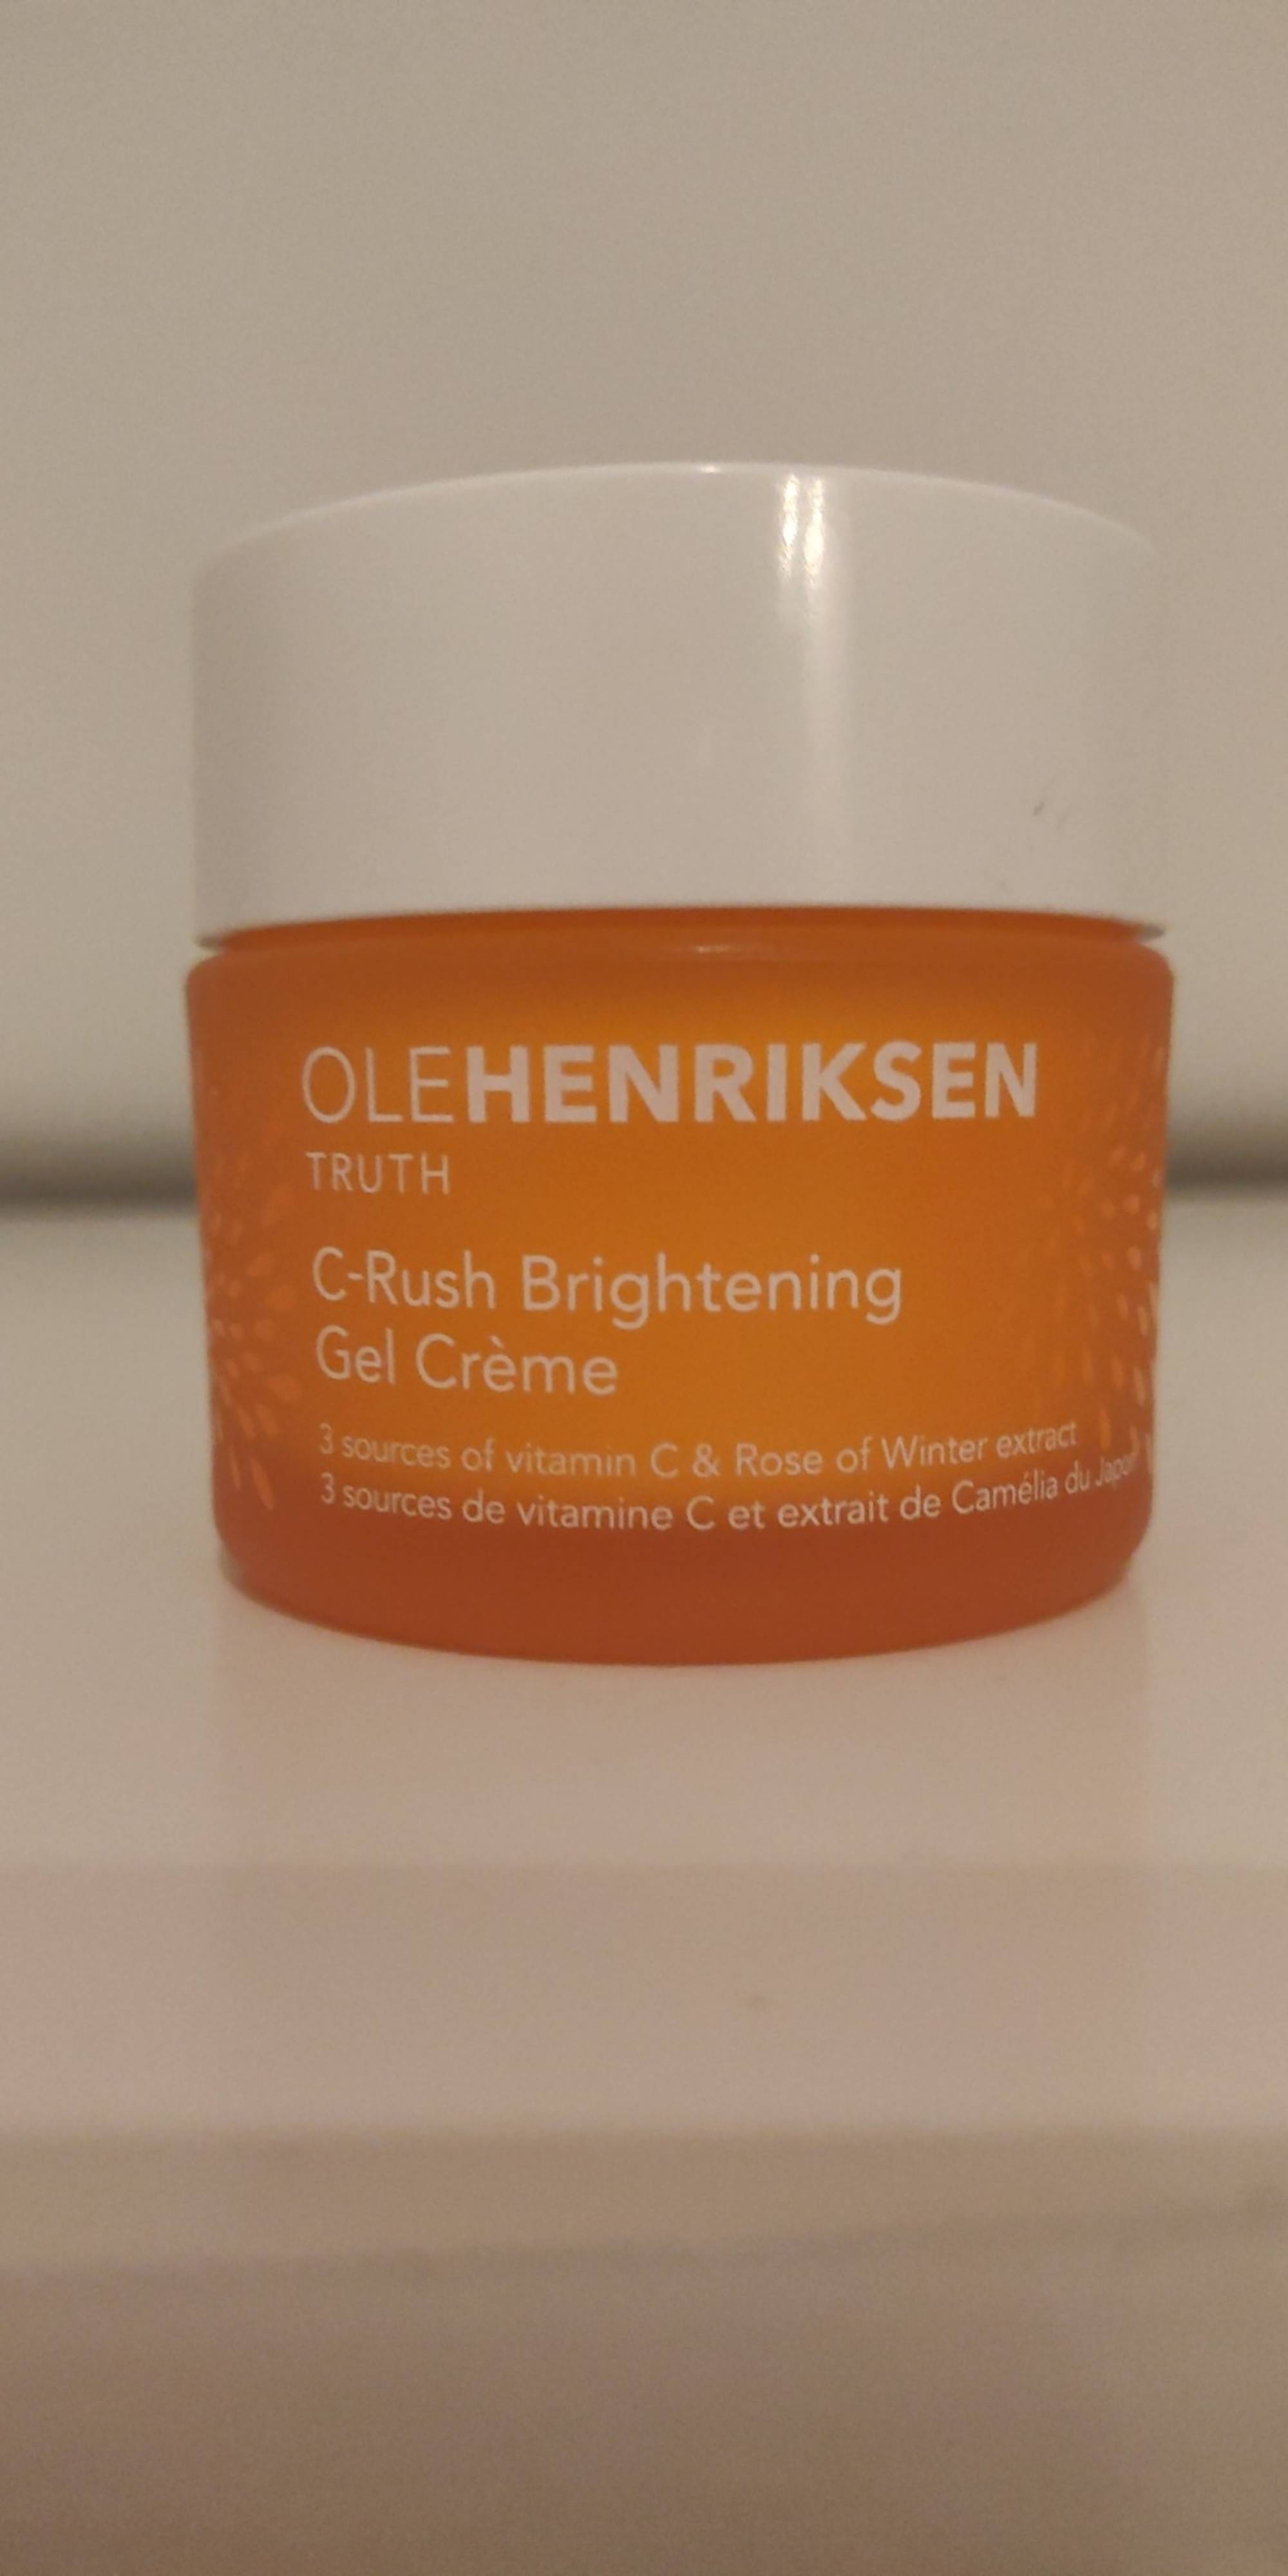 OLE HENRIKSEN - C-rush brightening - Gel crème